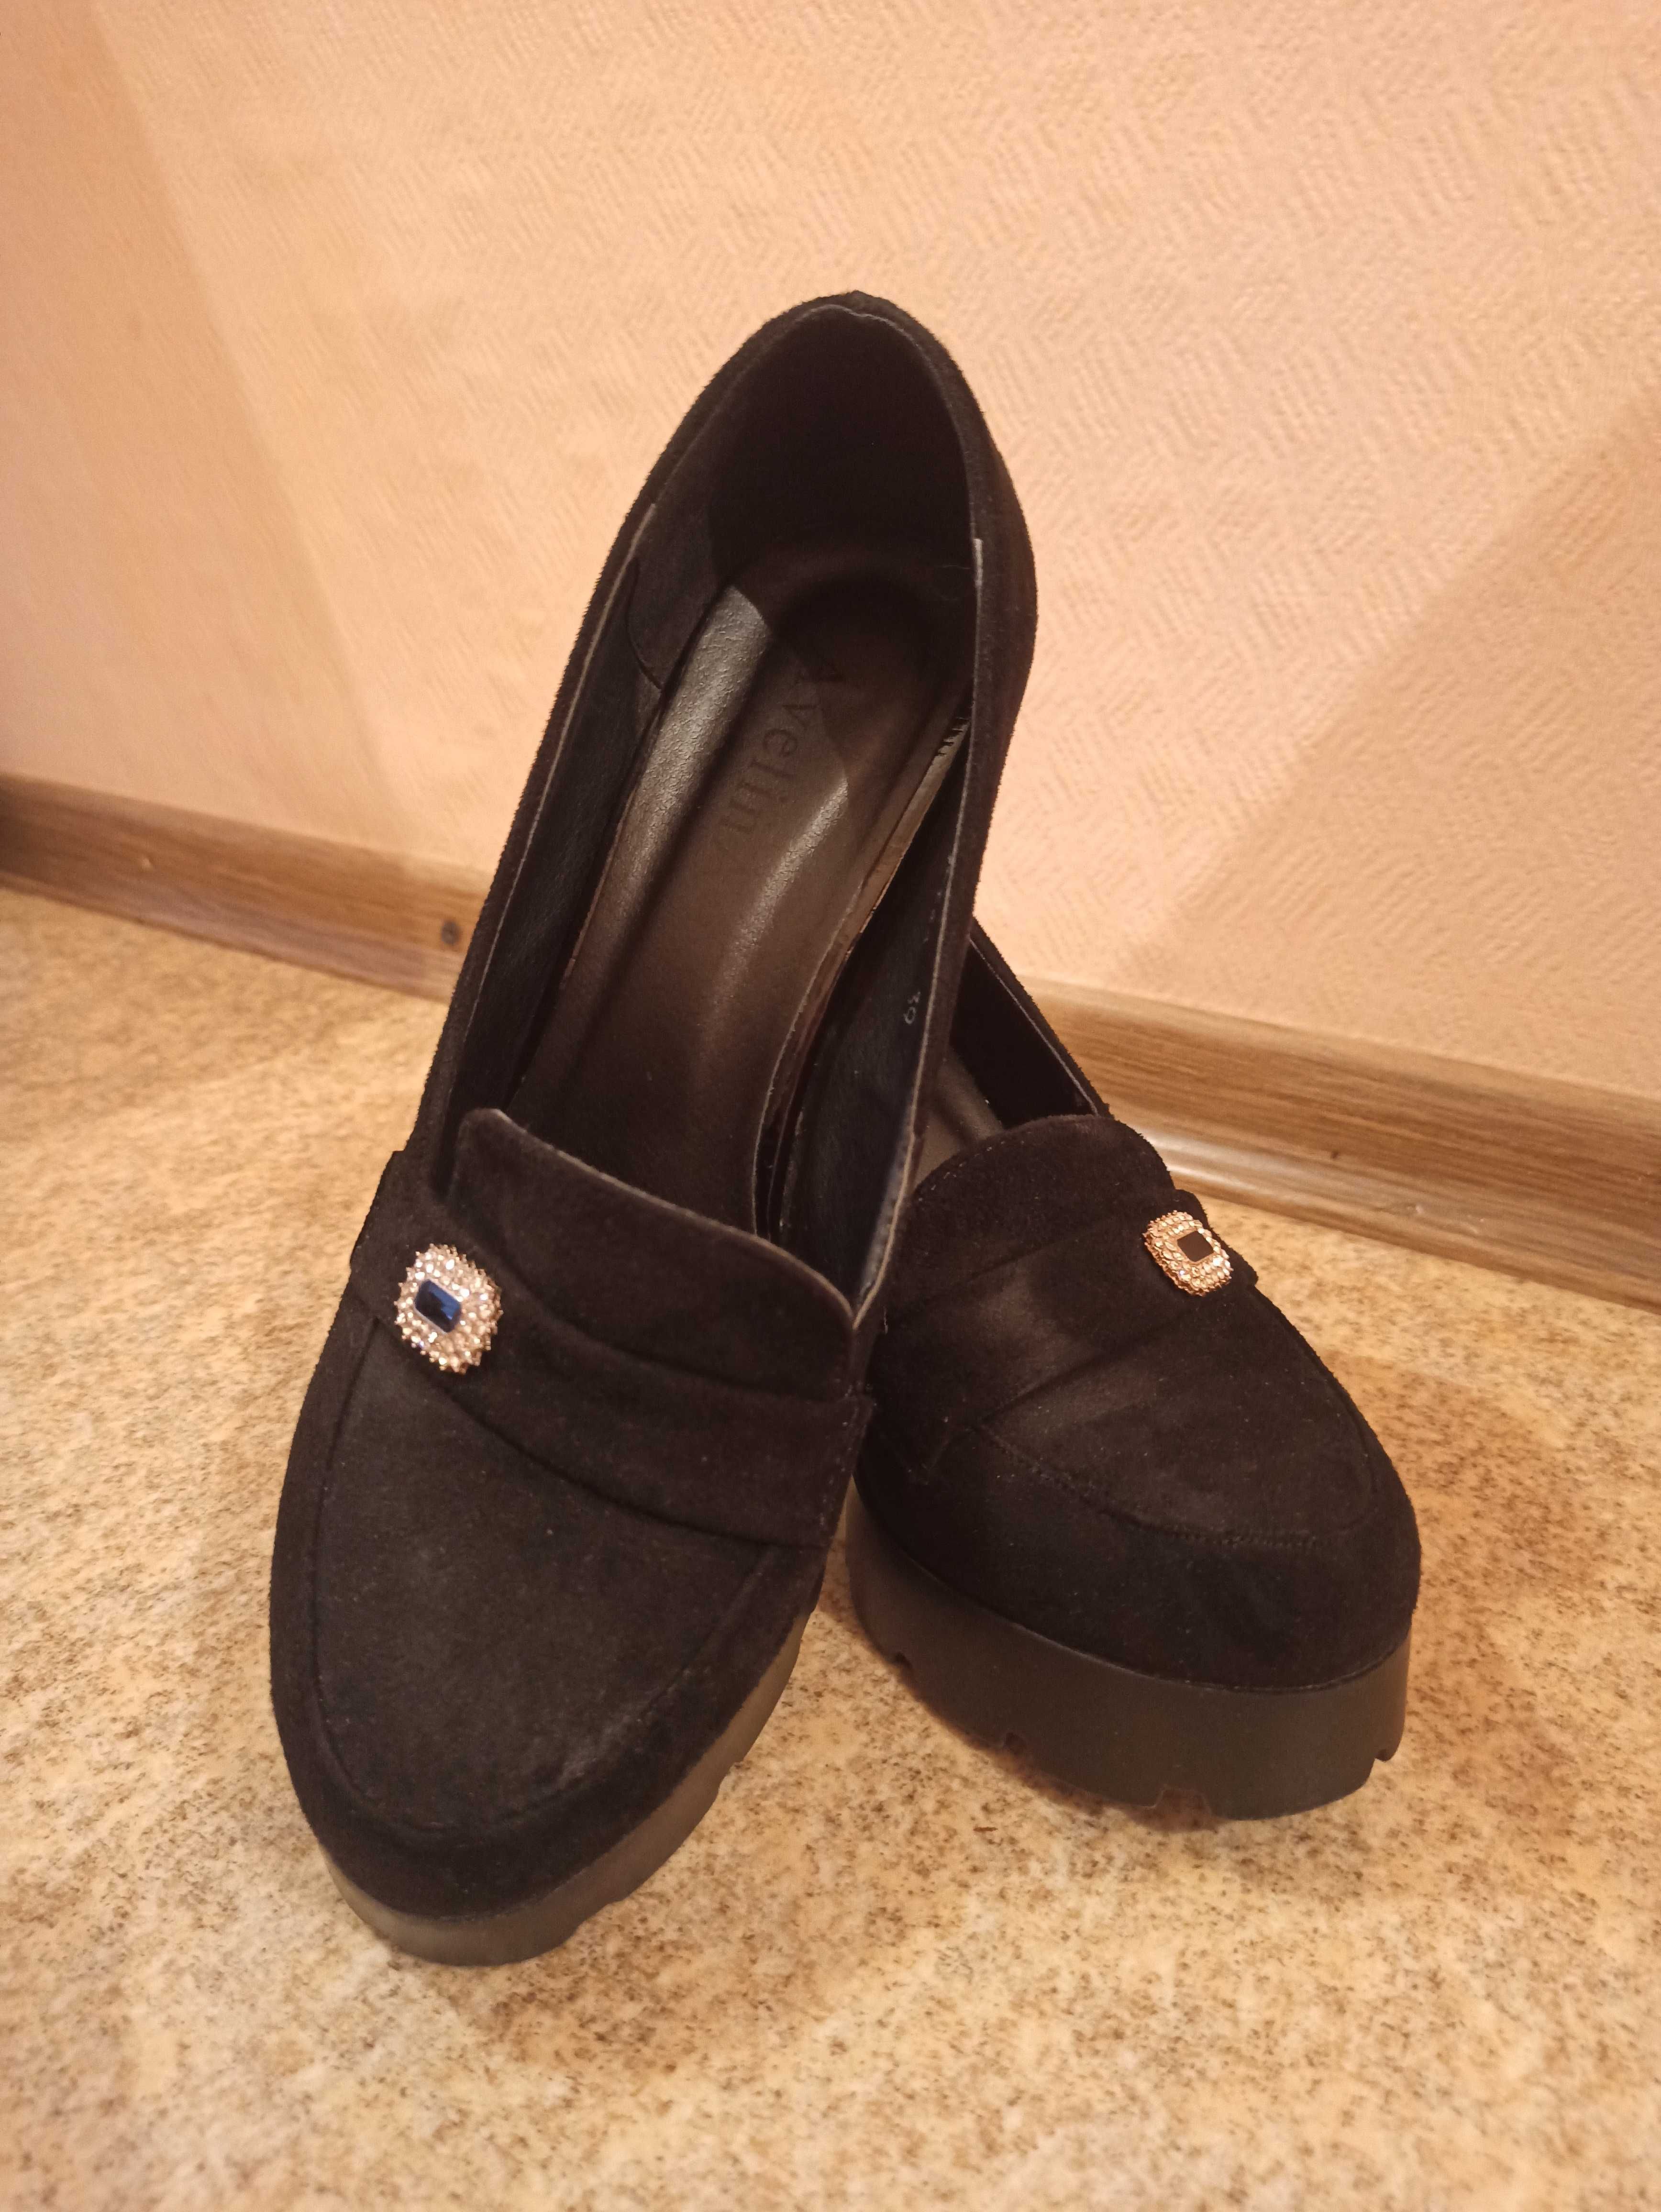 Продам женские туфли черные (нубук).